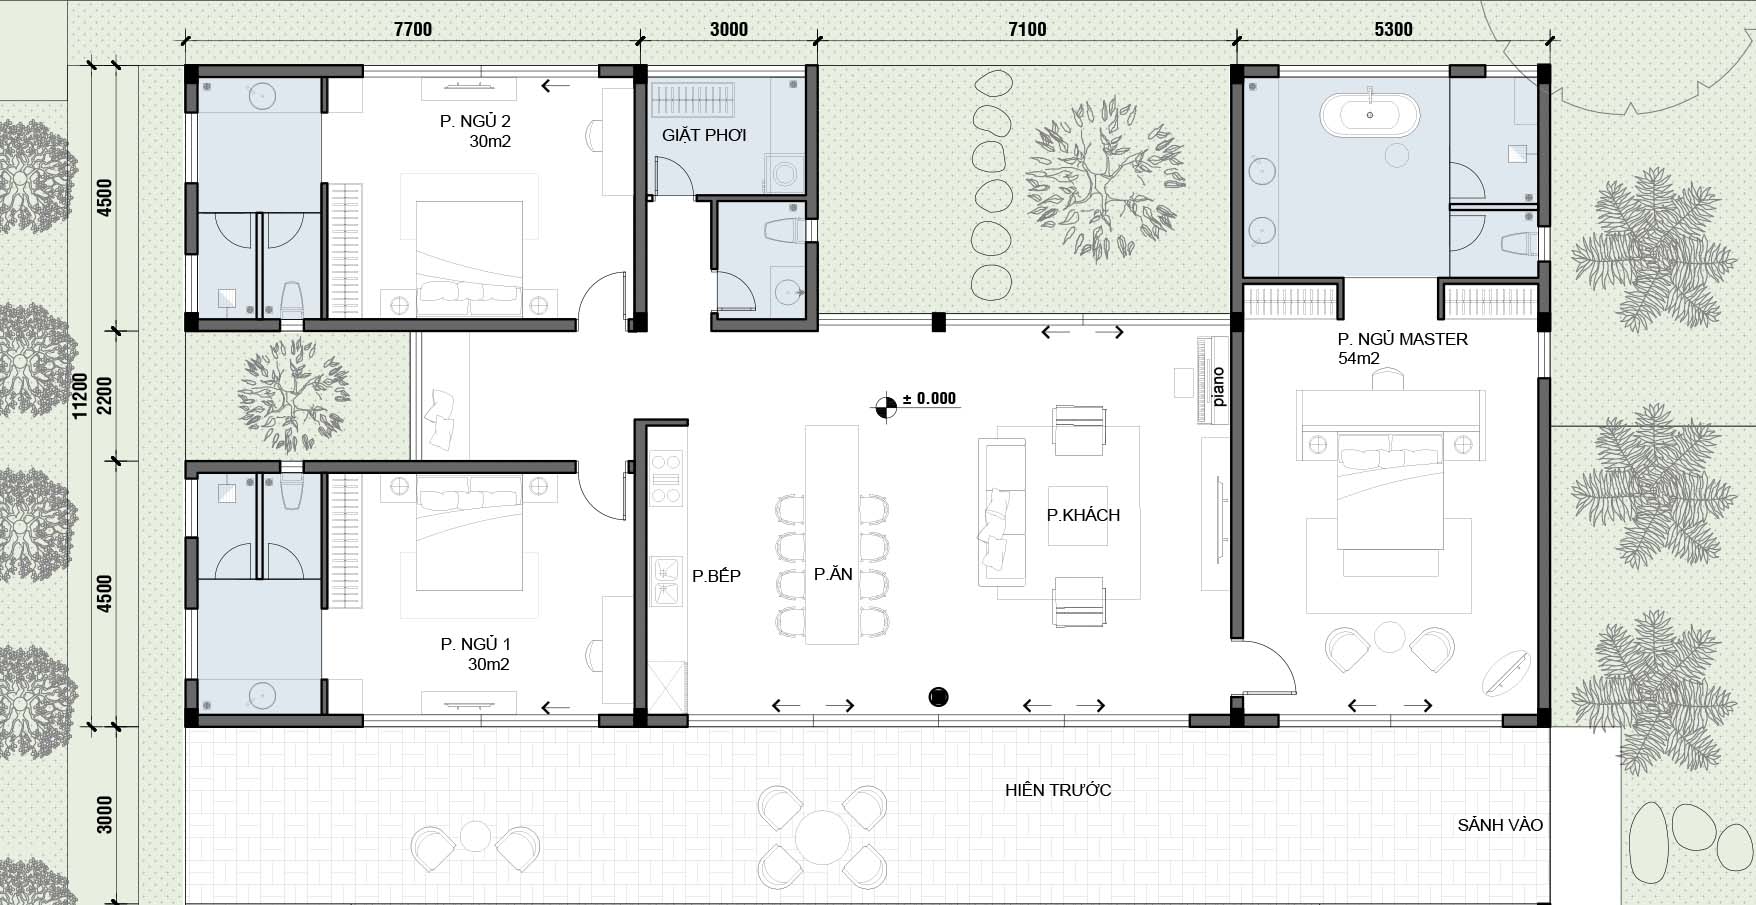 modern resort villa layout floor plan